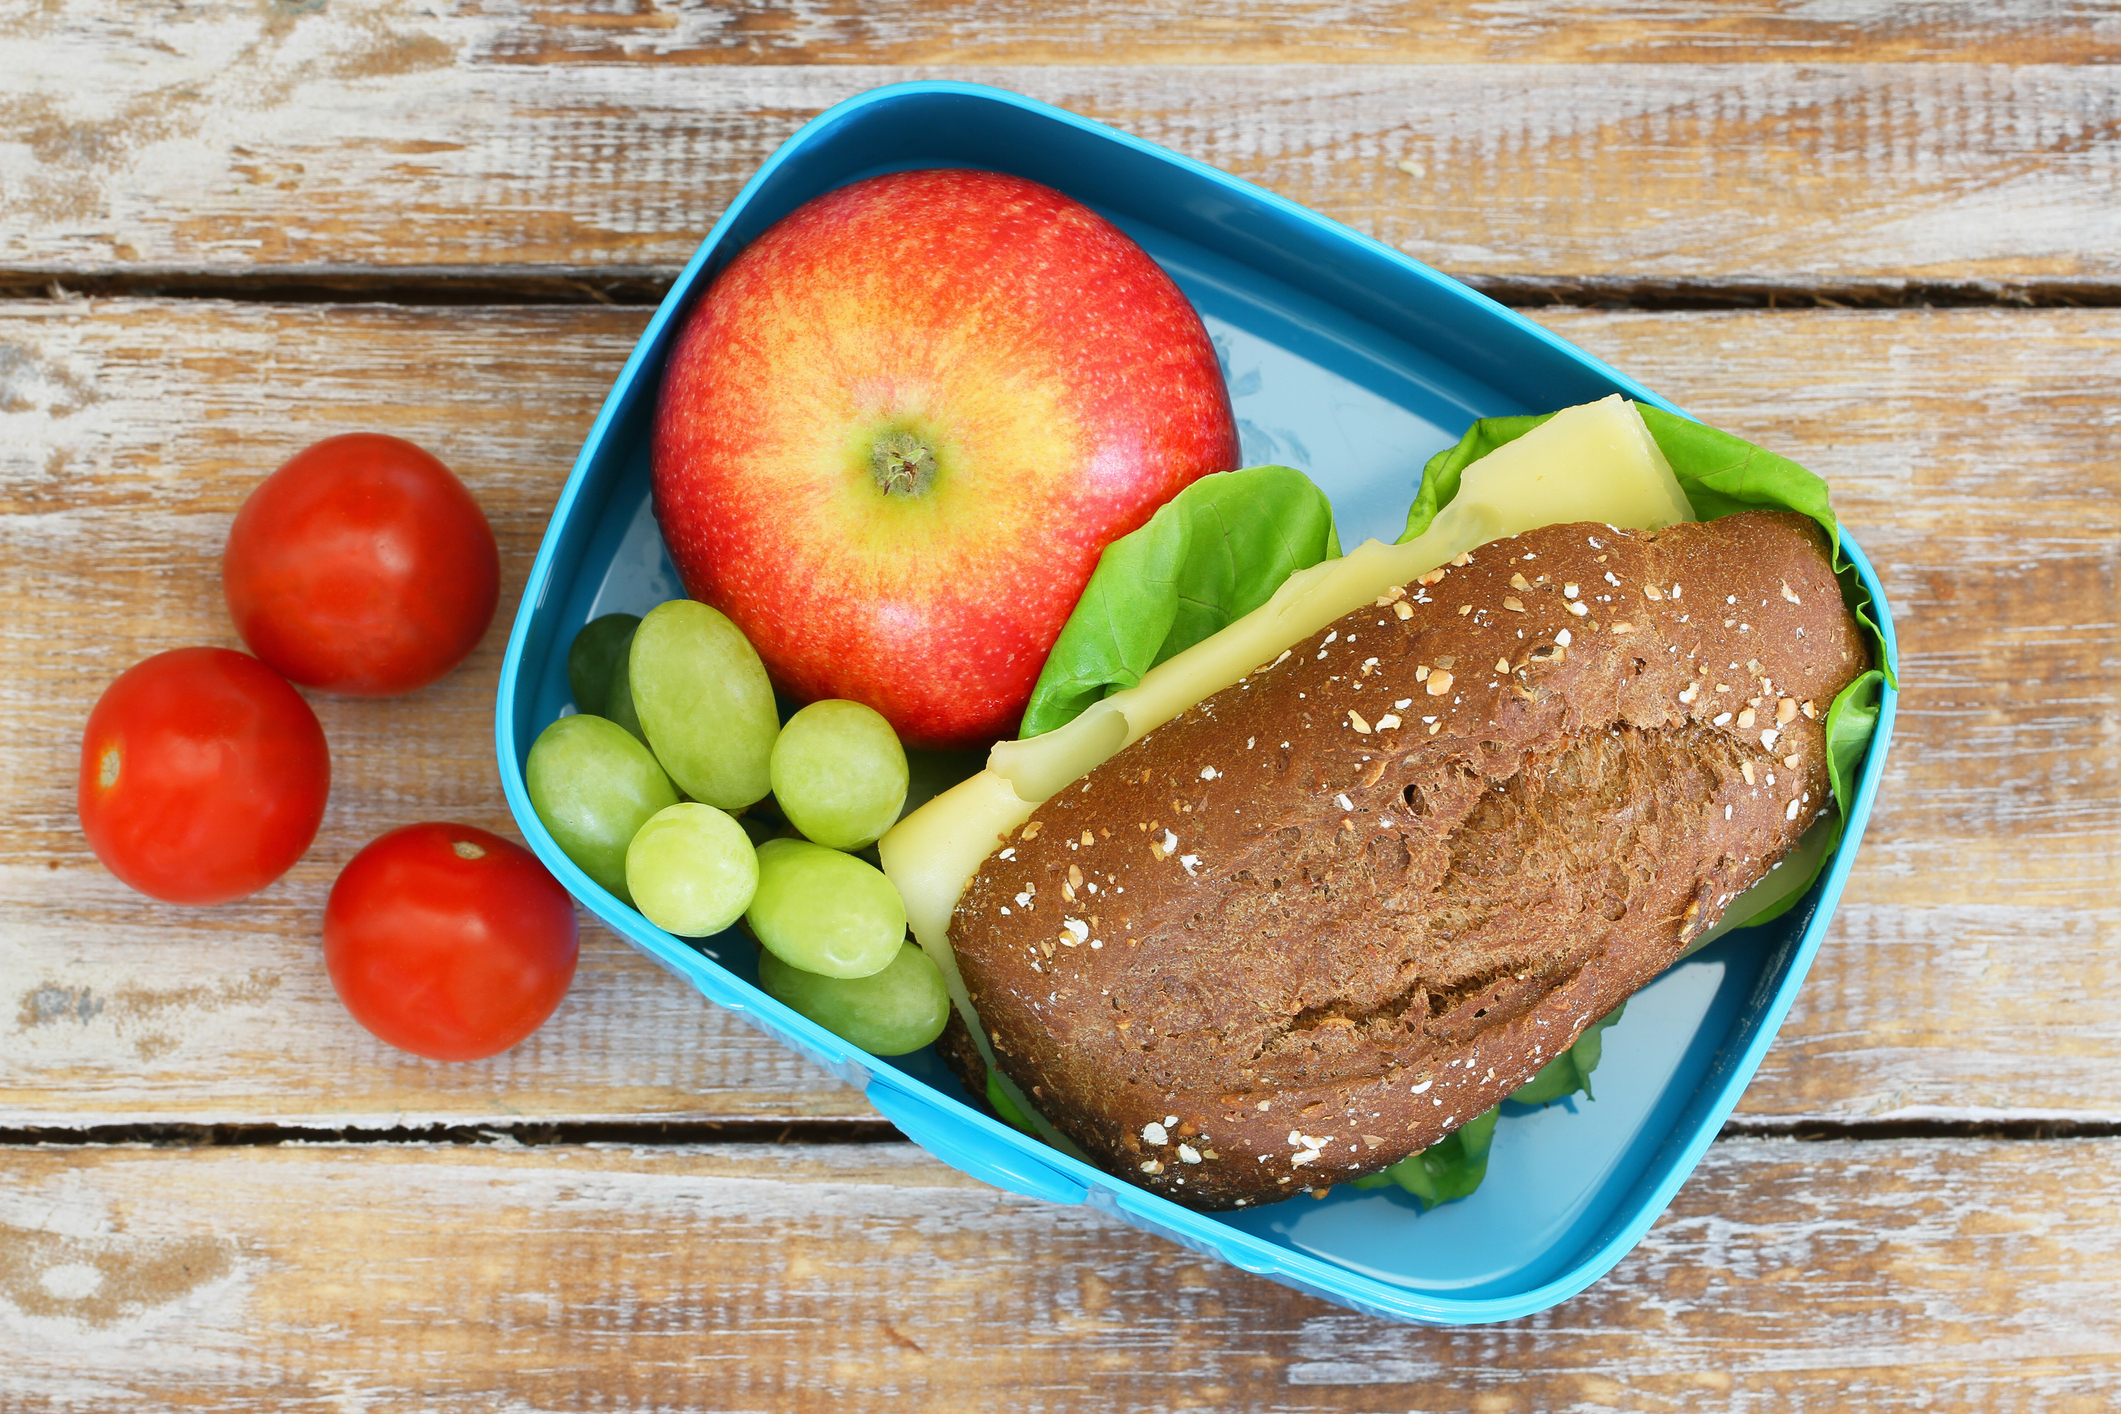 Boîte à lunch comprennant un sandwich multi-grain au fromage, une pomme, des raisins, et des tomates cerise